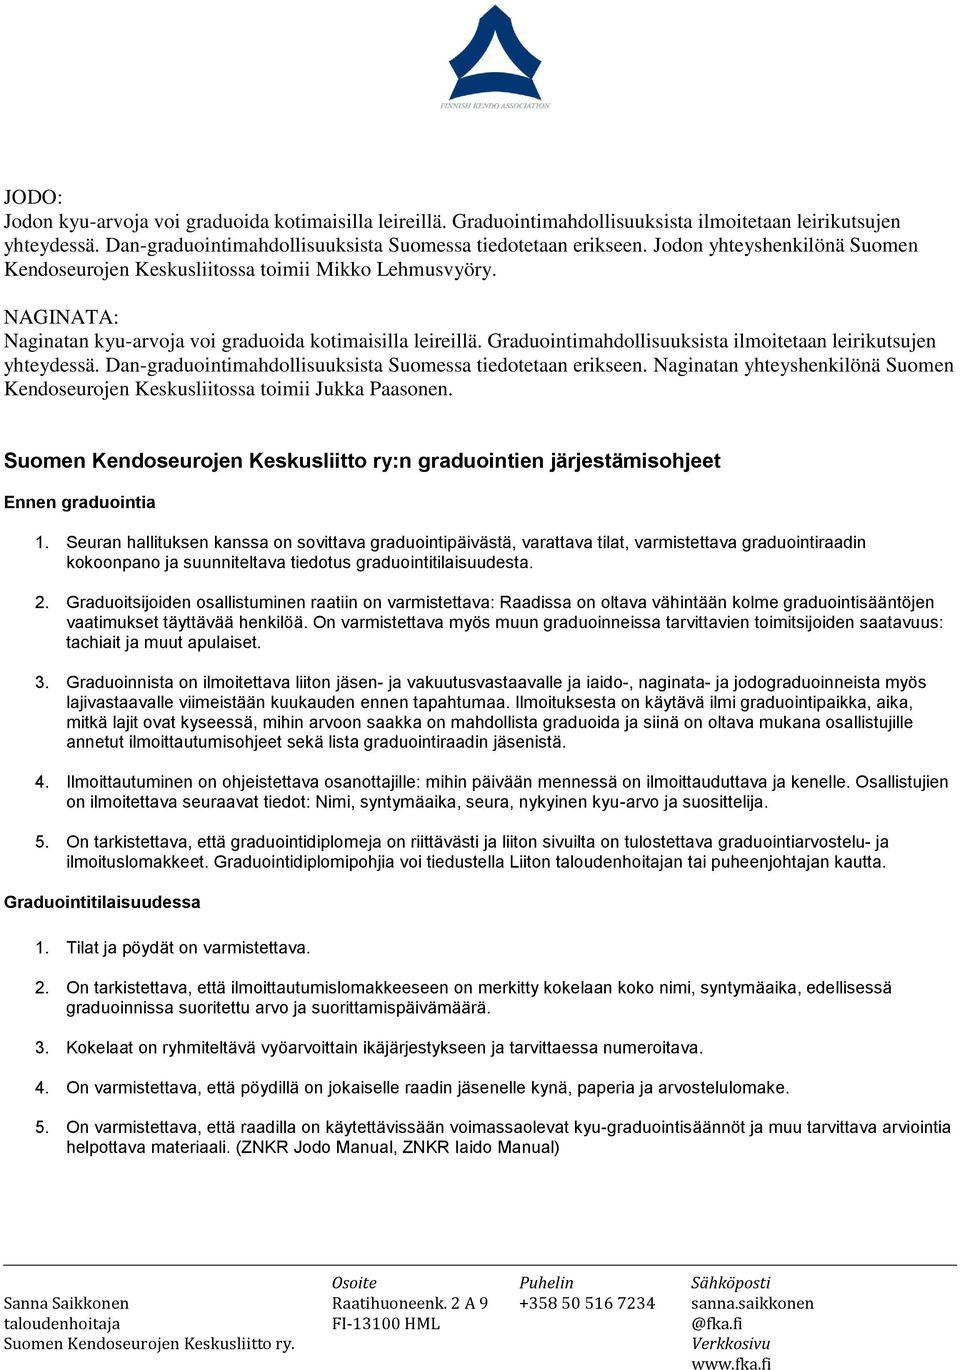 Graduointimahdollisuuksista ilmoitetaan leirikutsujen yhteydessä. Dan-graduointimahdollisuuksista Suomessa tiedotetaan erikseen.